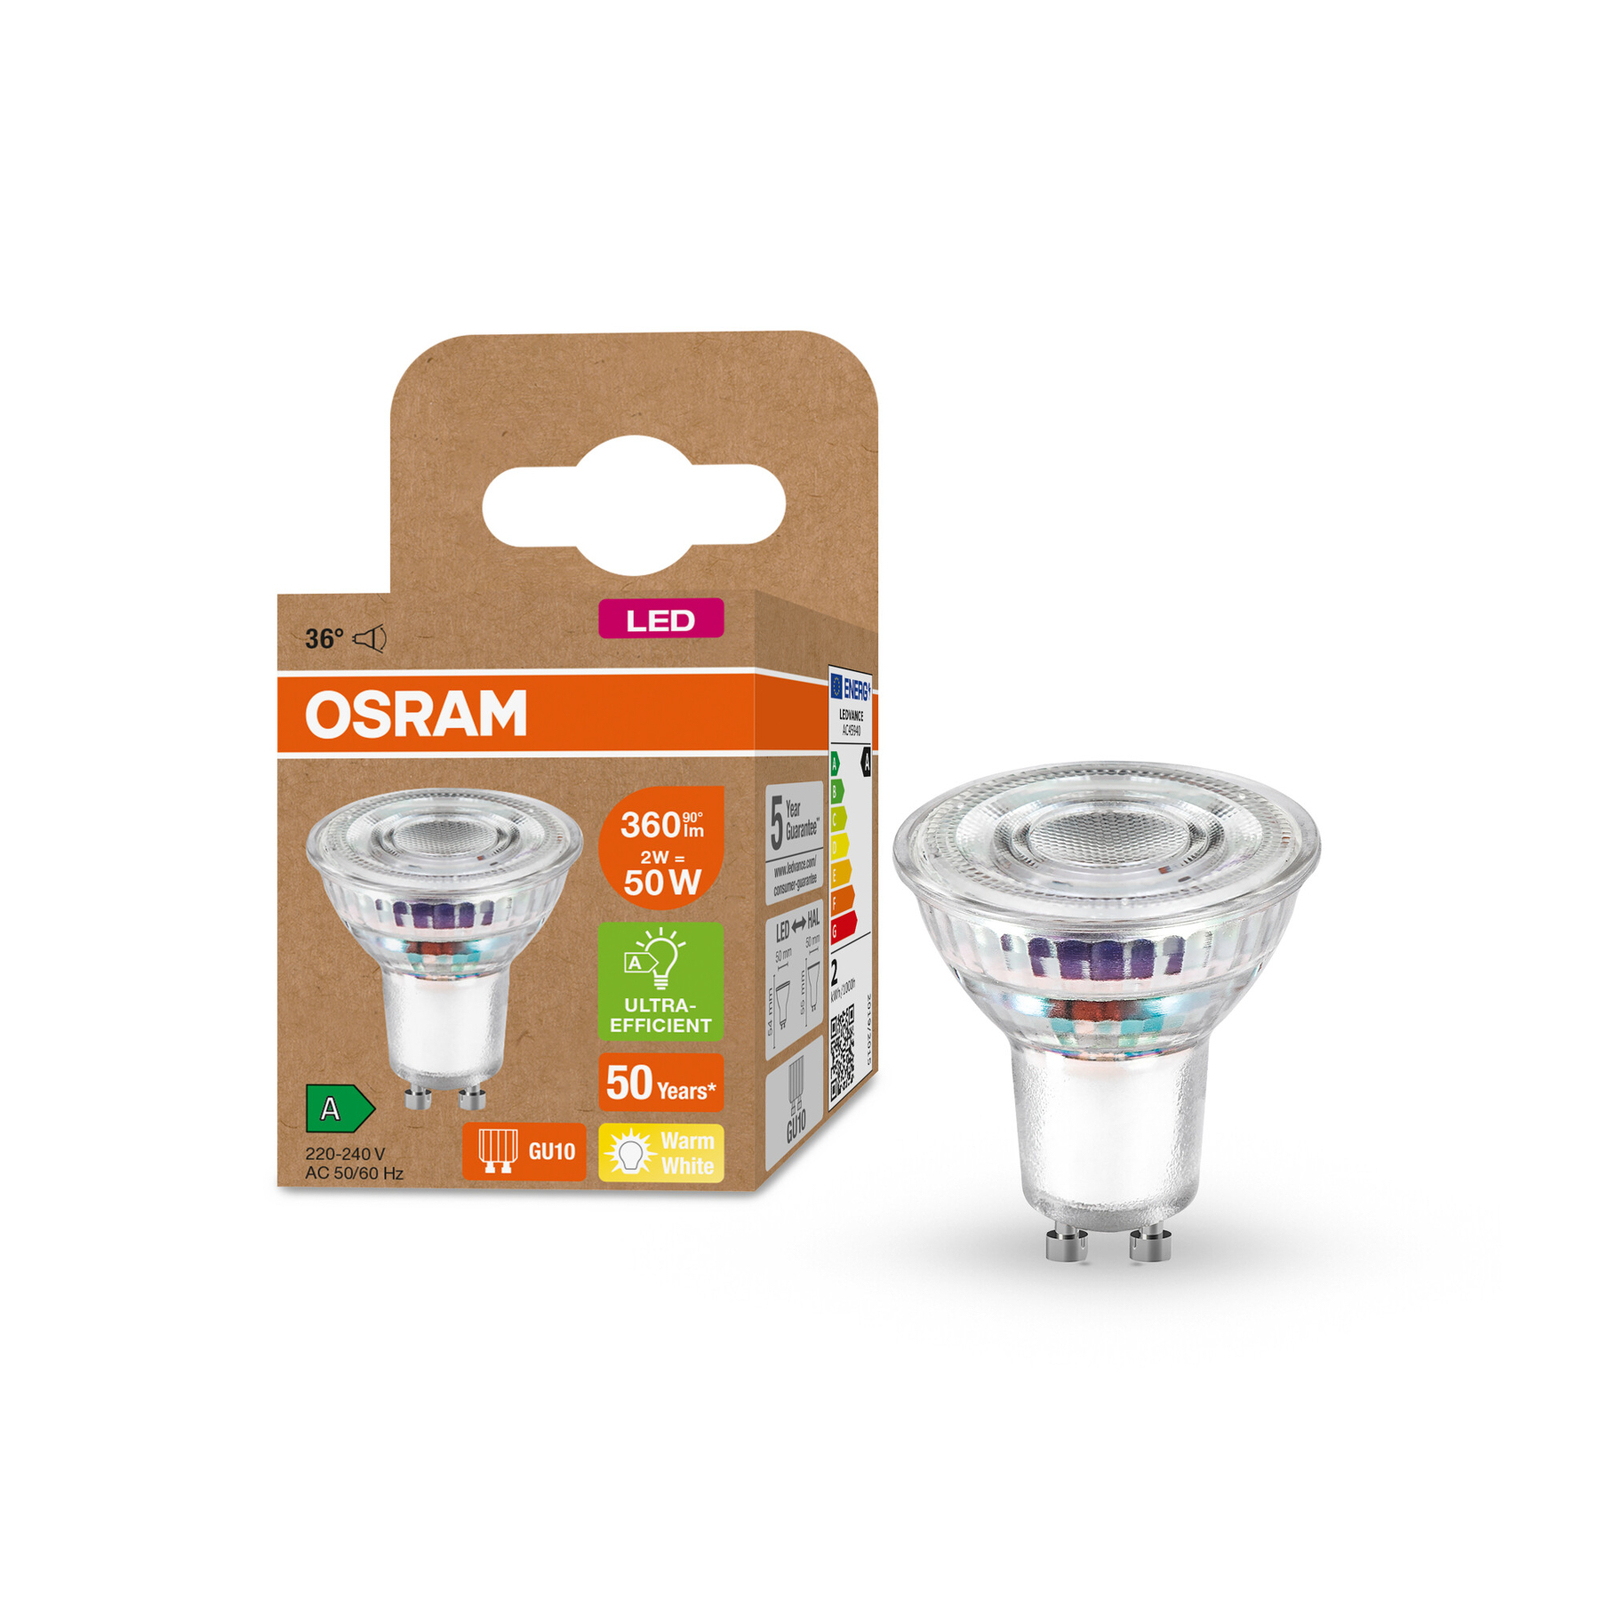 OSRAM reflector LED bulb GU10 2W 360lm 827 36°